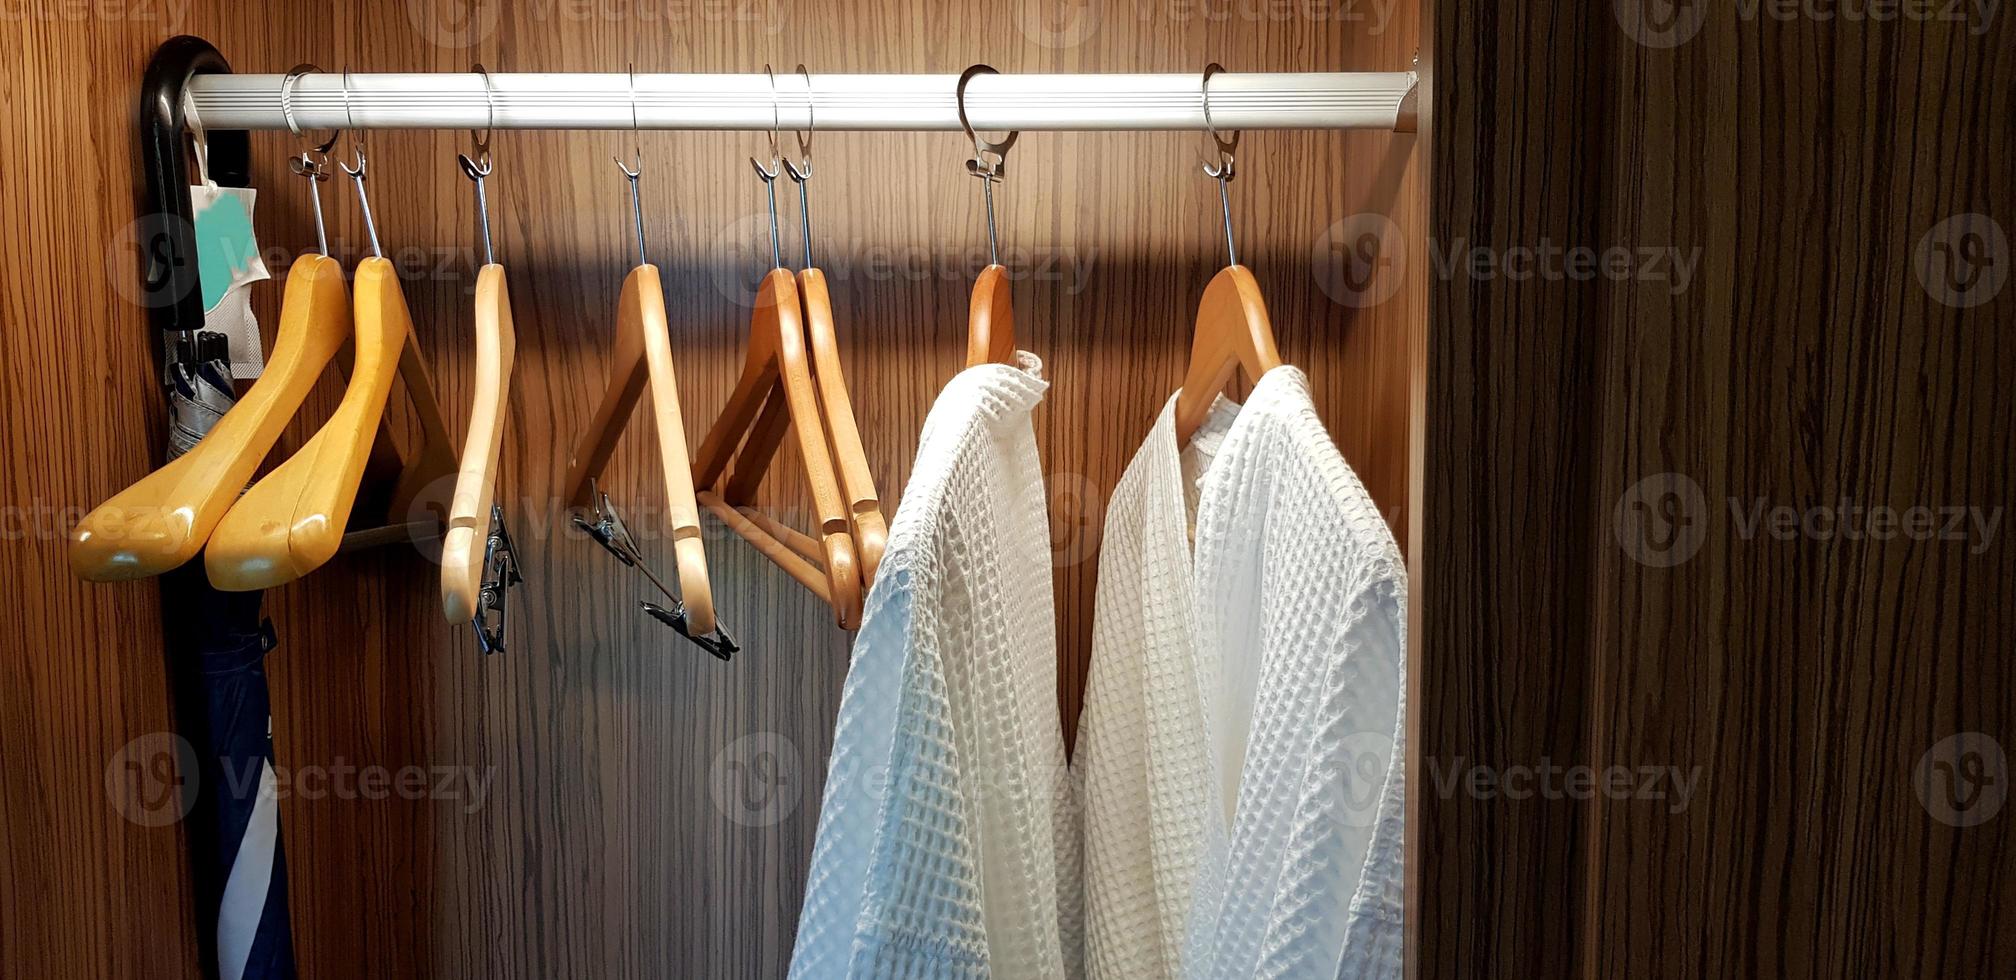 twee wit schoon badjassen kleding of gewaad met houten hanger en hangende binnen donker bruin kasten met licht voor onderhoud klant vervelend en nemen douche Bij hotel foto